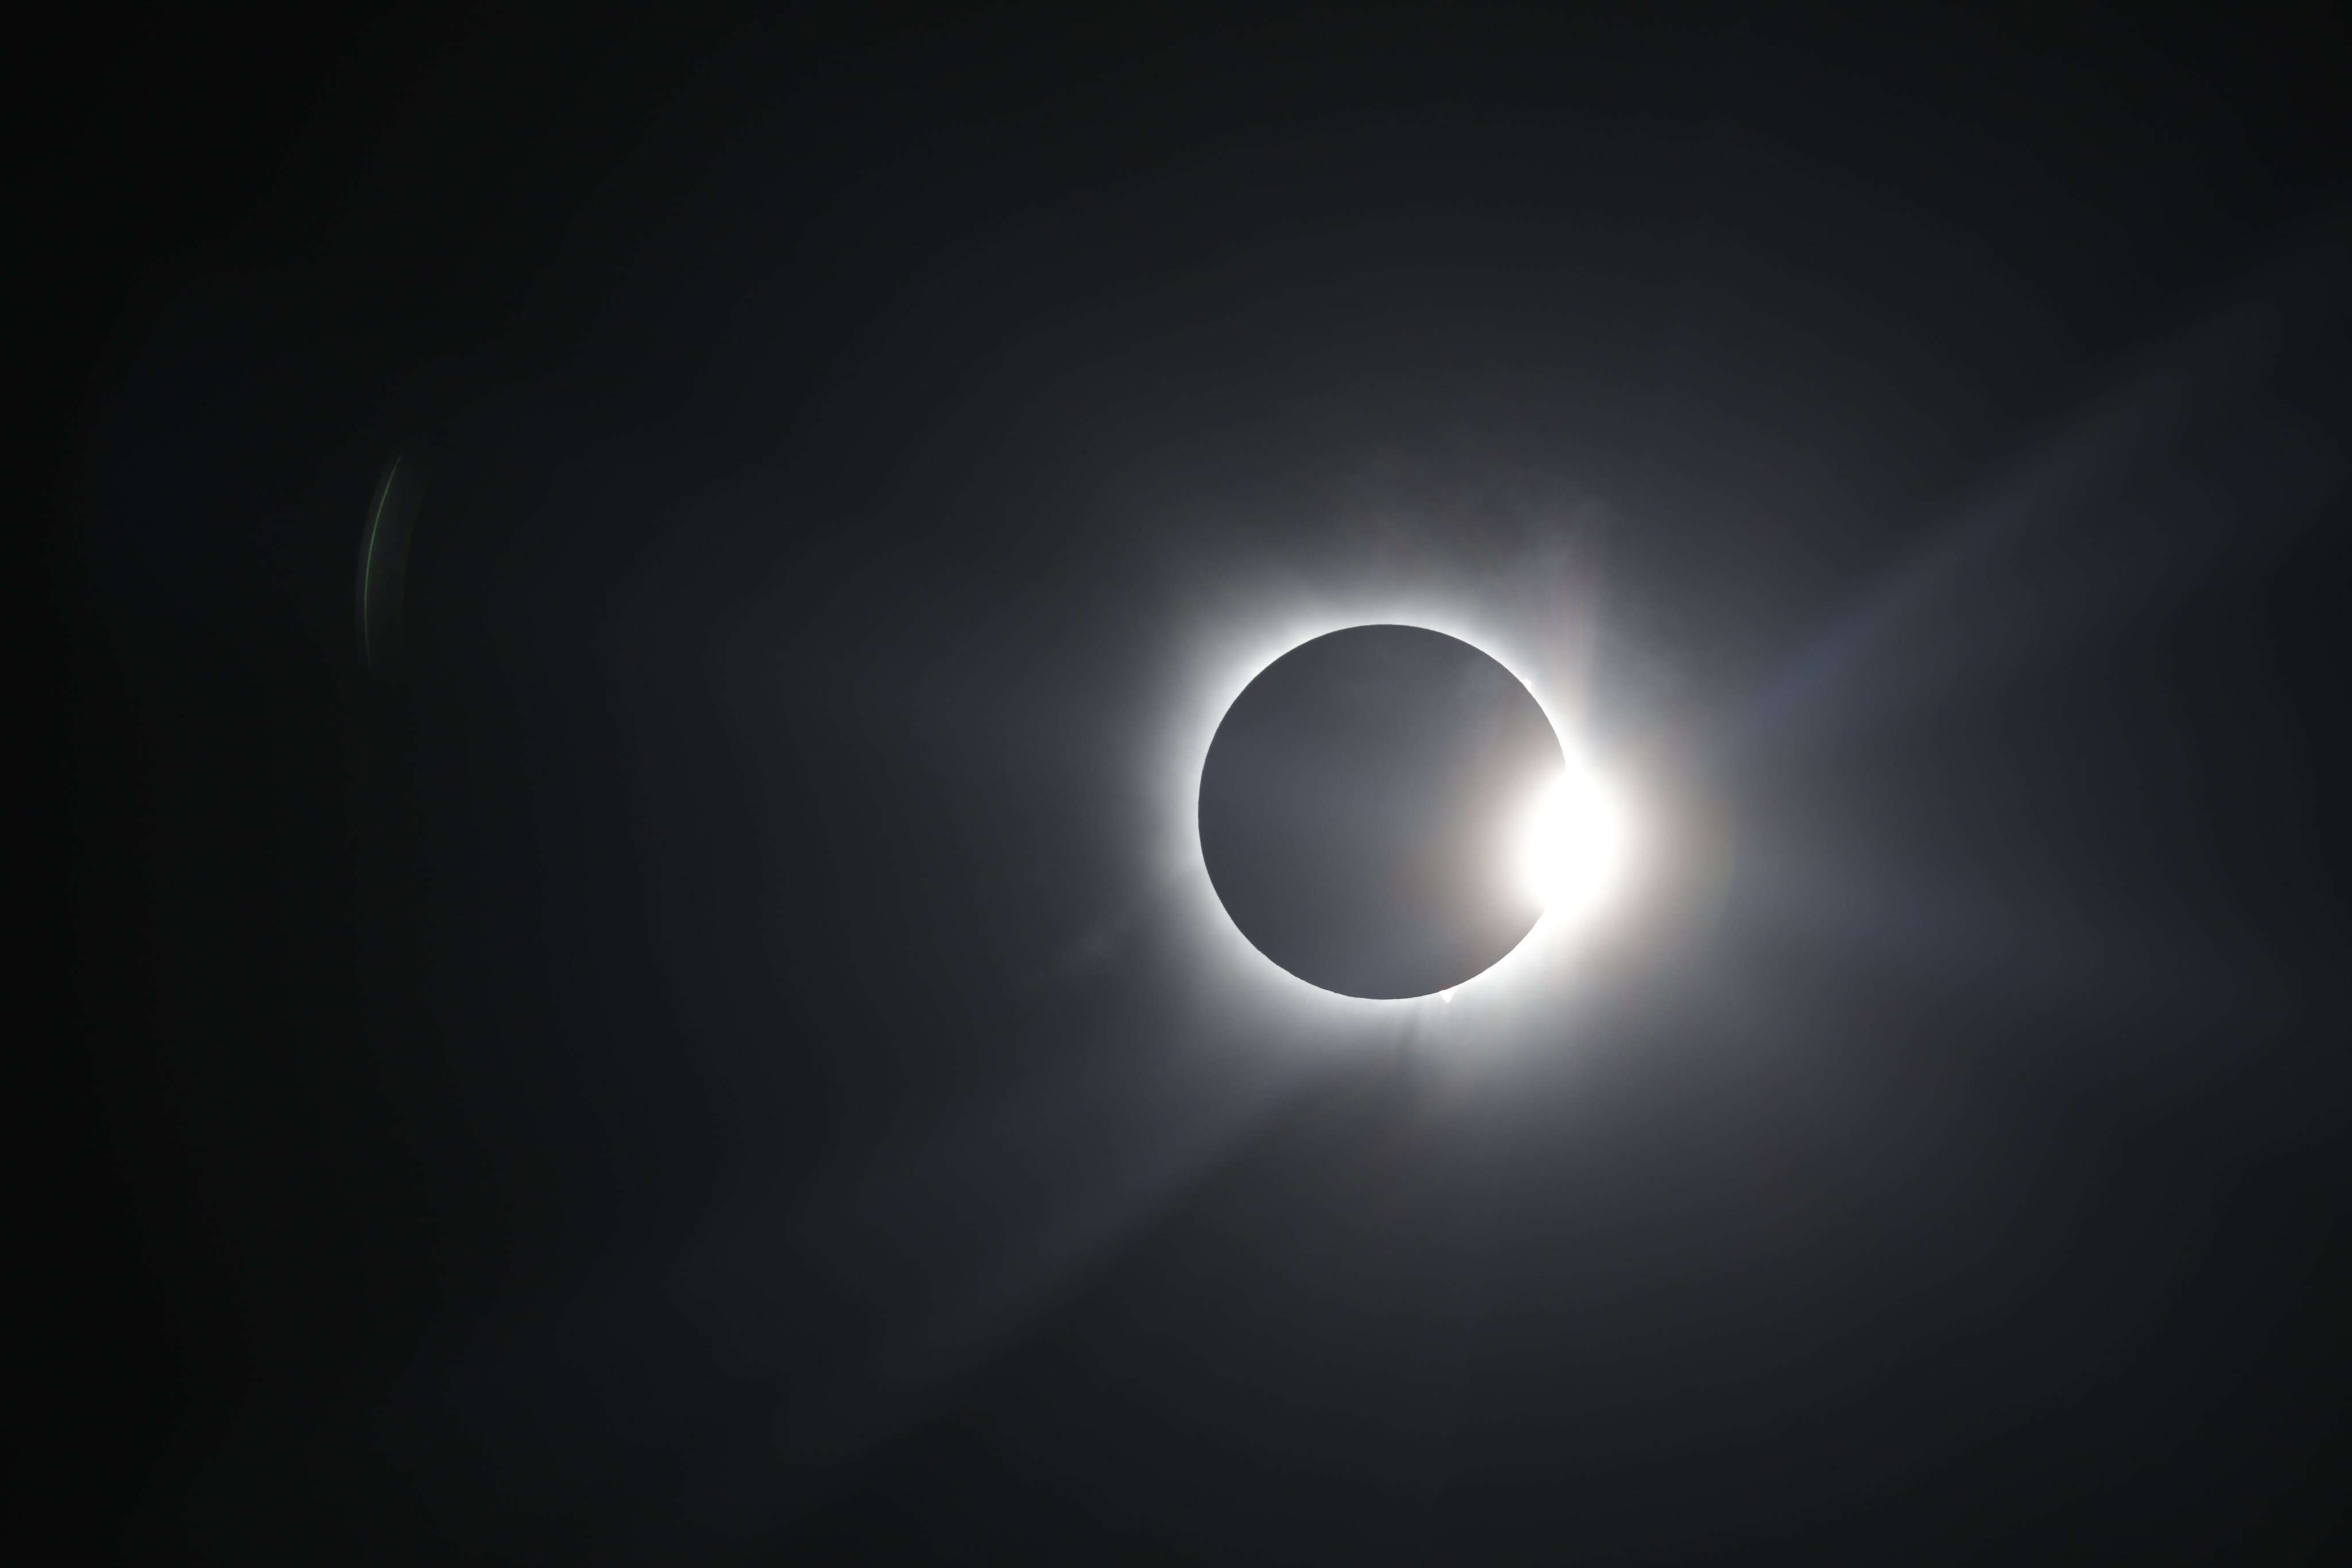 O eclipse solar total acontece quando a Lua se posiciona entre o Sol e a Terra. Reprodução/Nasa